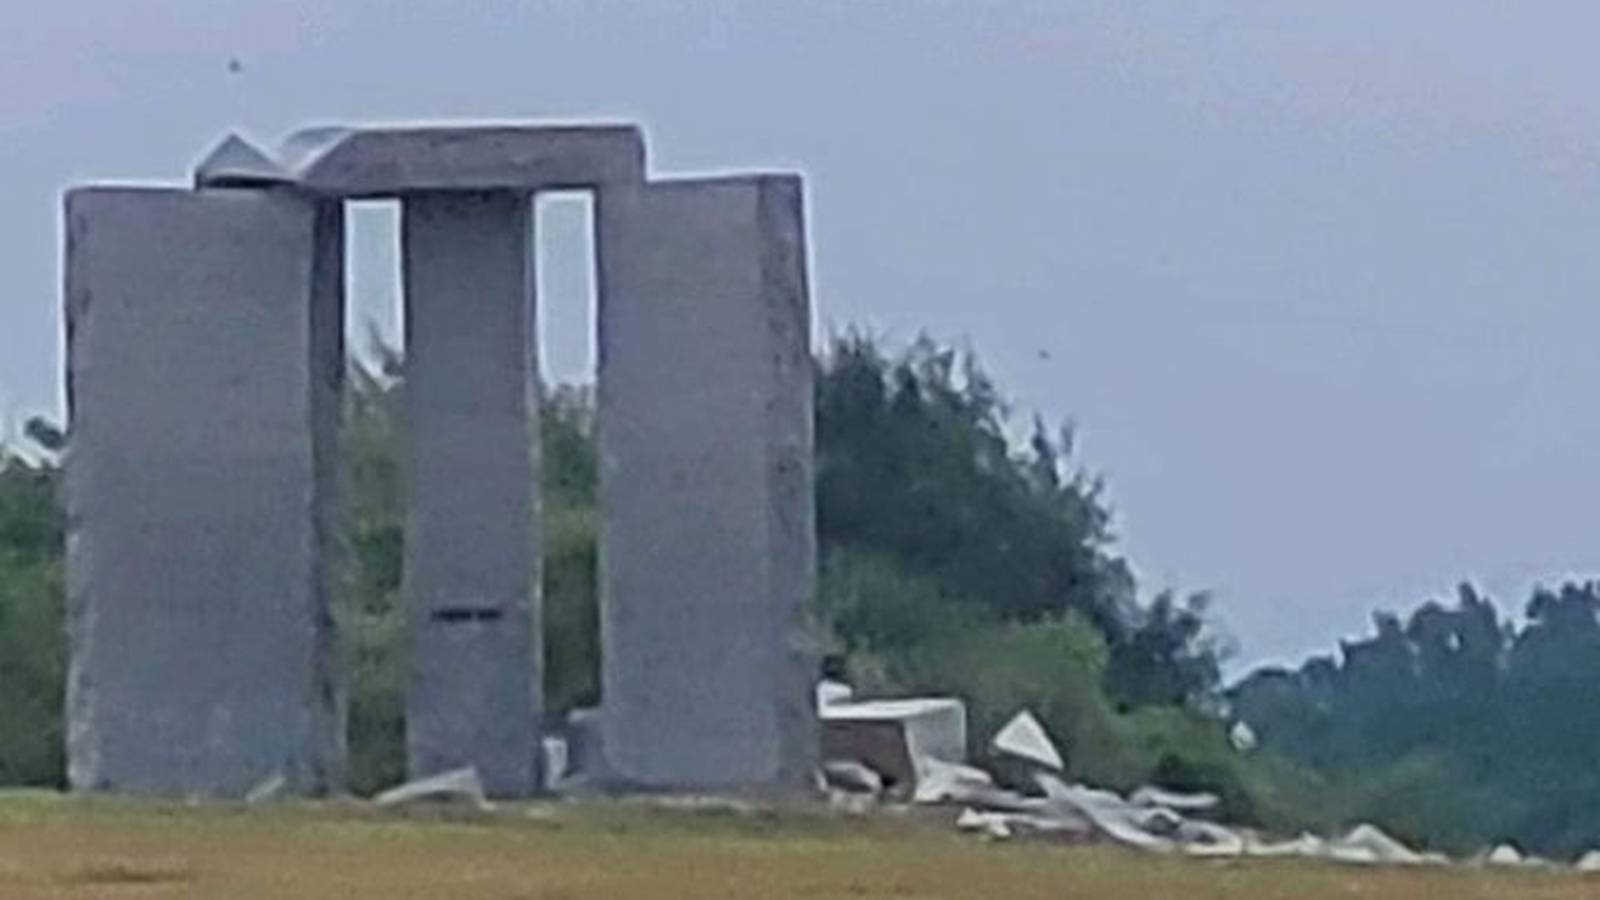 ΜΠΟΥΜ!!! – Έκρηξη σκίζει κυριολεκτικά το μνημείο “ερήμωσης του πληθυσμού” της ελίτ, «Κατευθυντήριοι Λίθοι της Τζώρτζιας»!!!